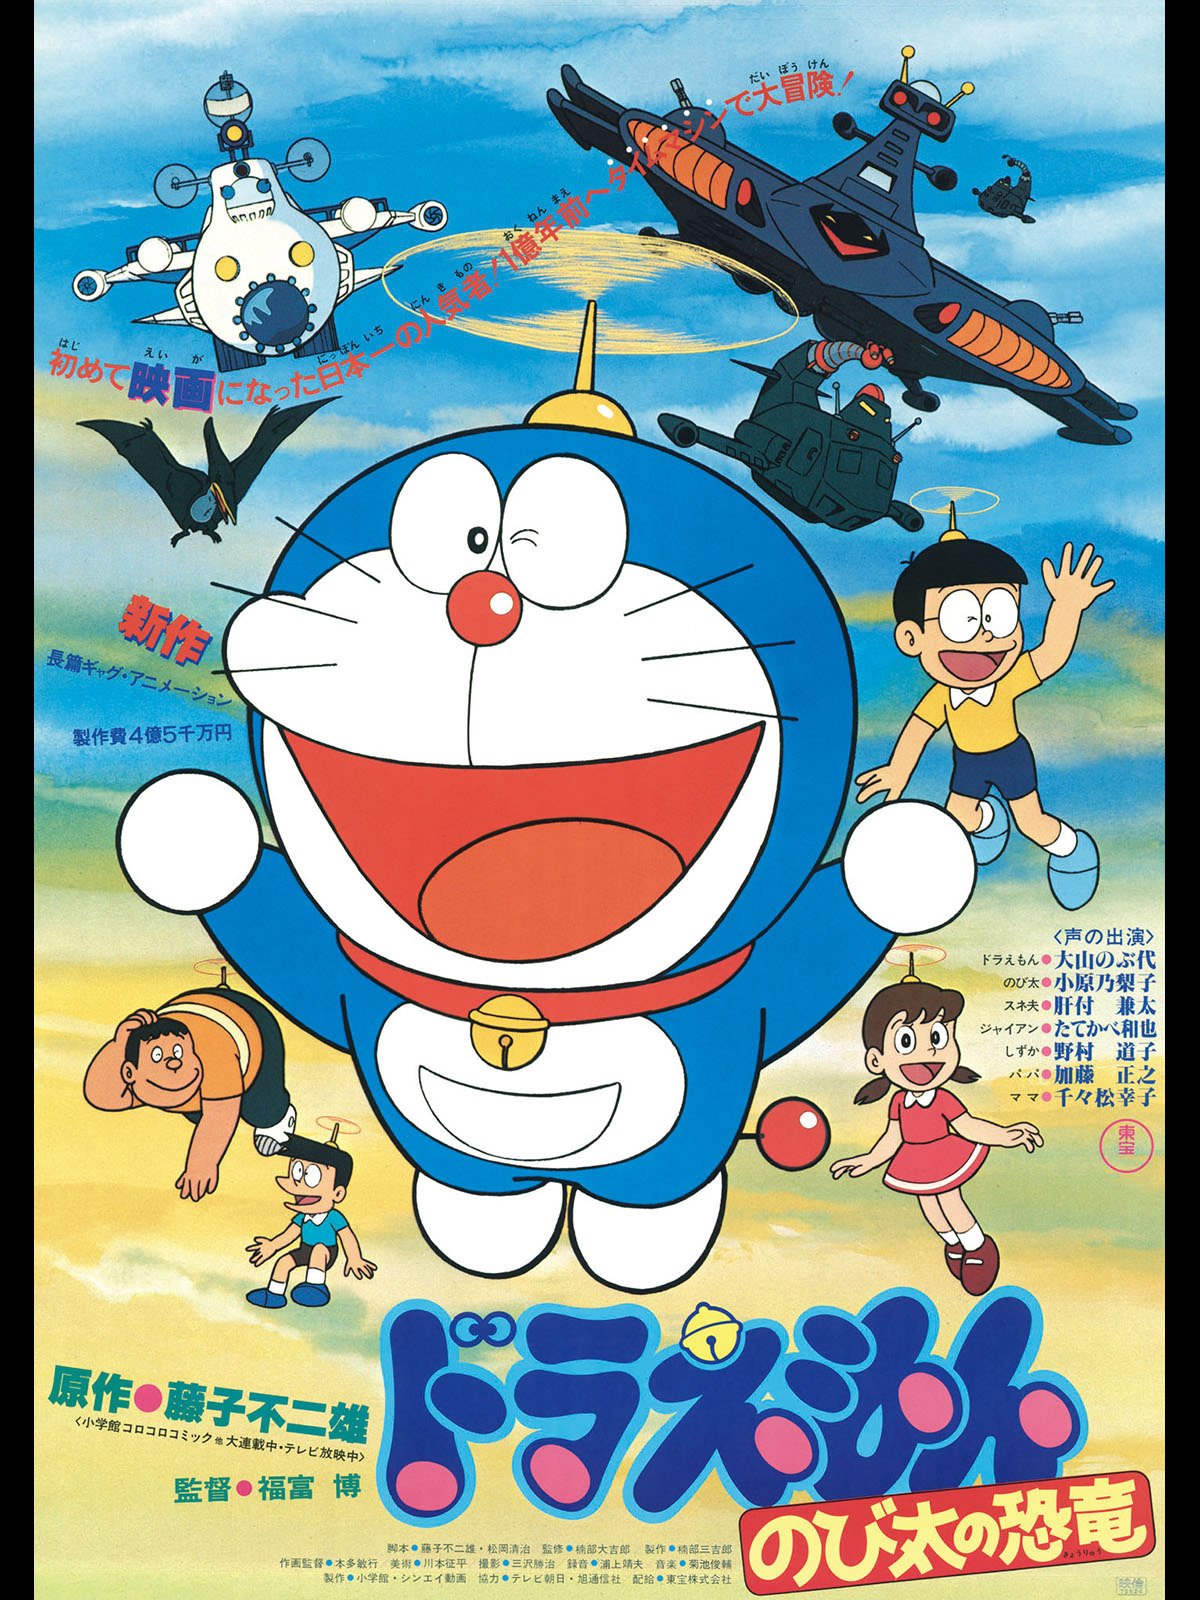 Category:Movies | Doraemon Wiki | FANDOM powered by Wikia